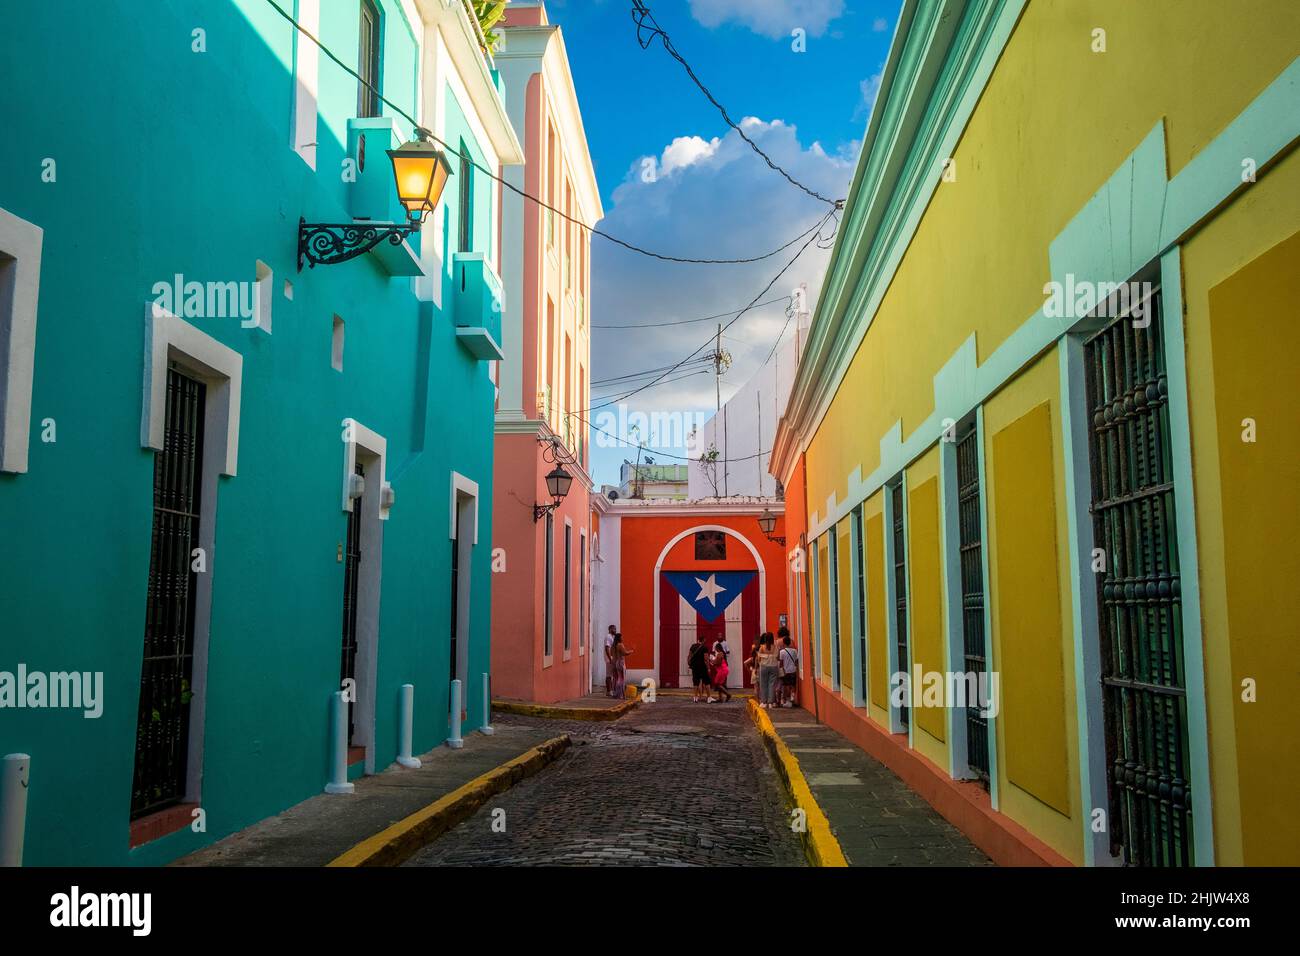 Turisti vicino ad un murale della bandiera di Puerto Rico in una strada piena di case colorate, Old San Juan, Porto Rico Foto Stock